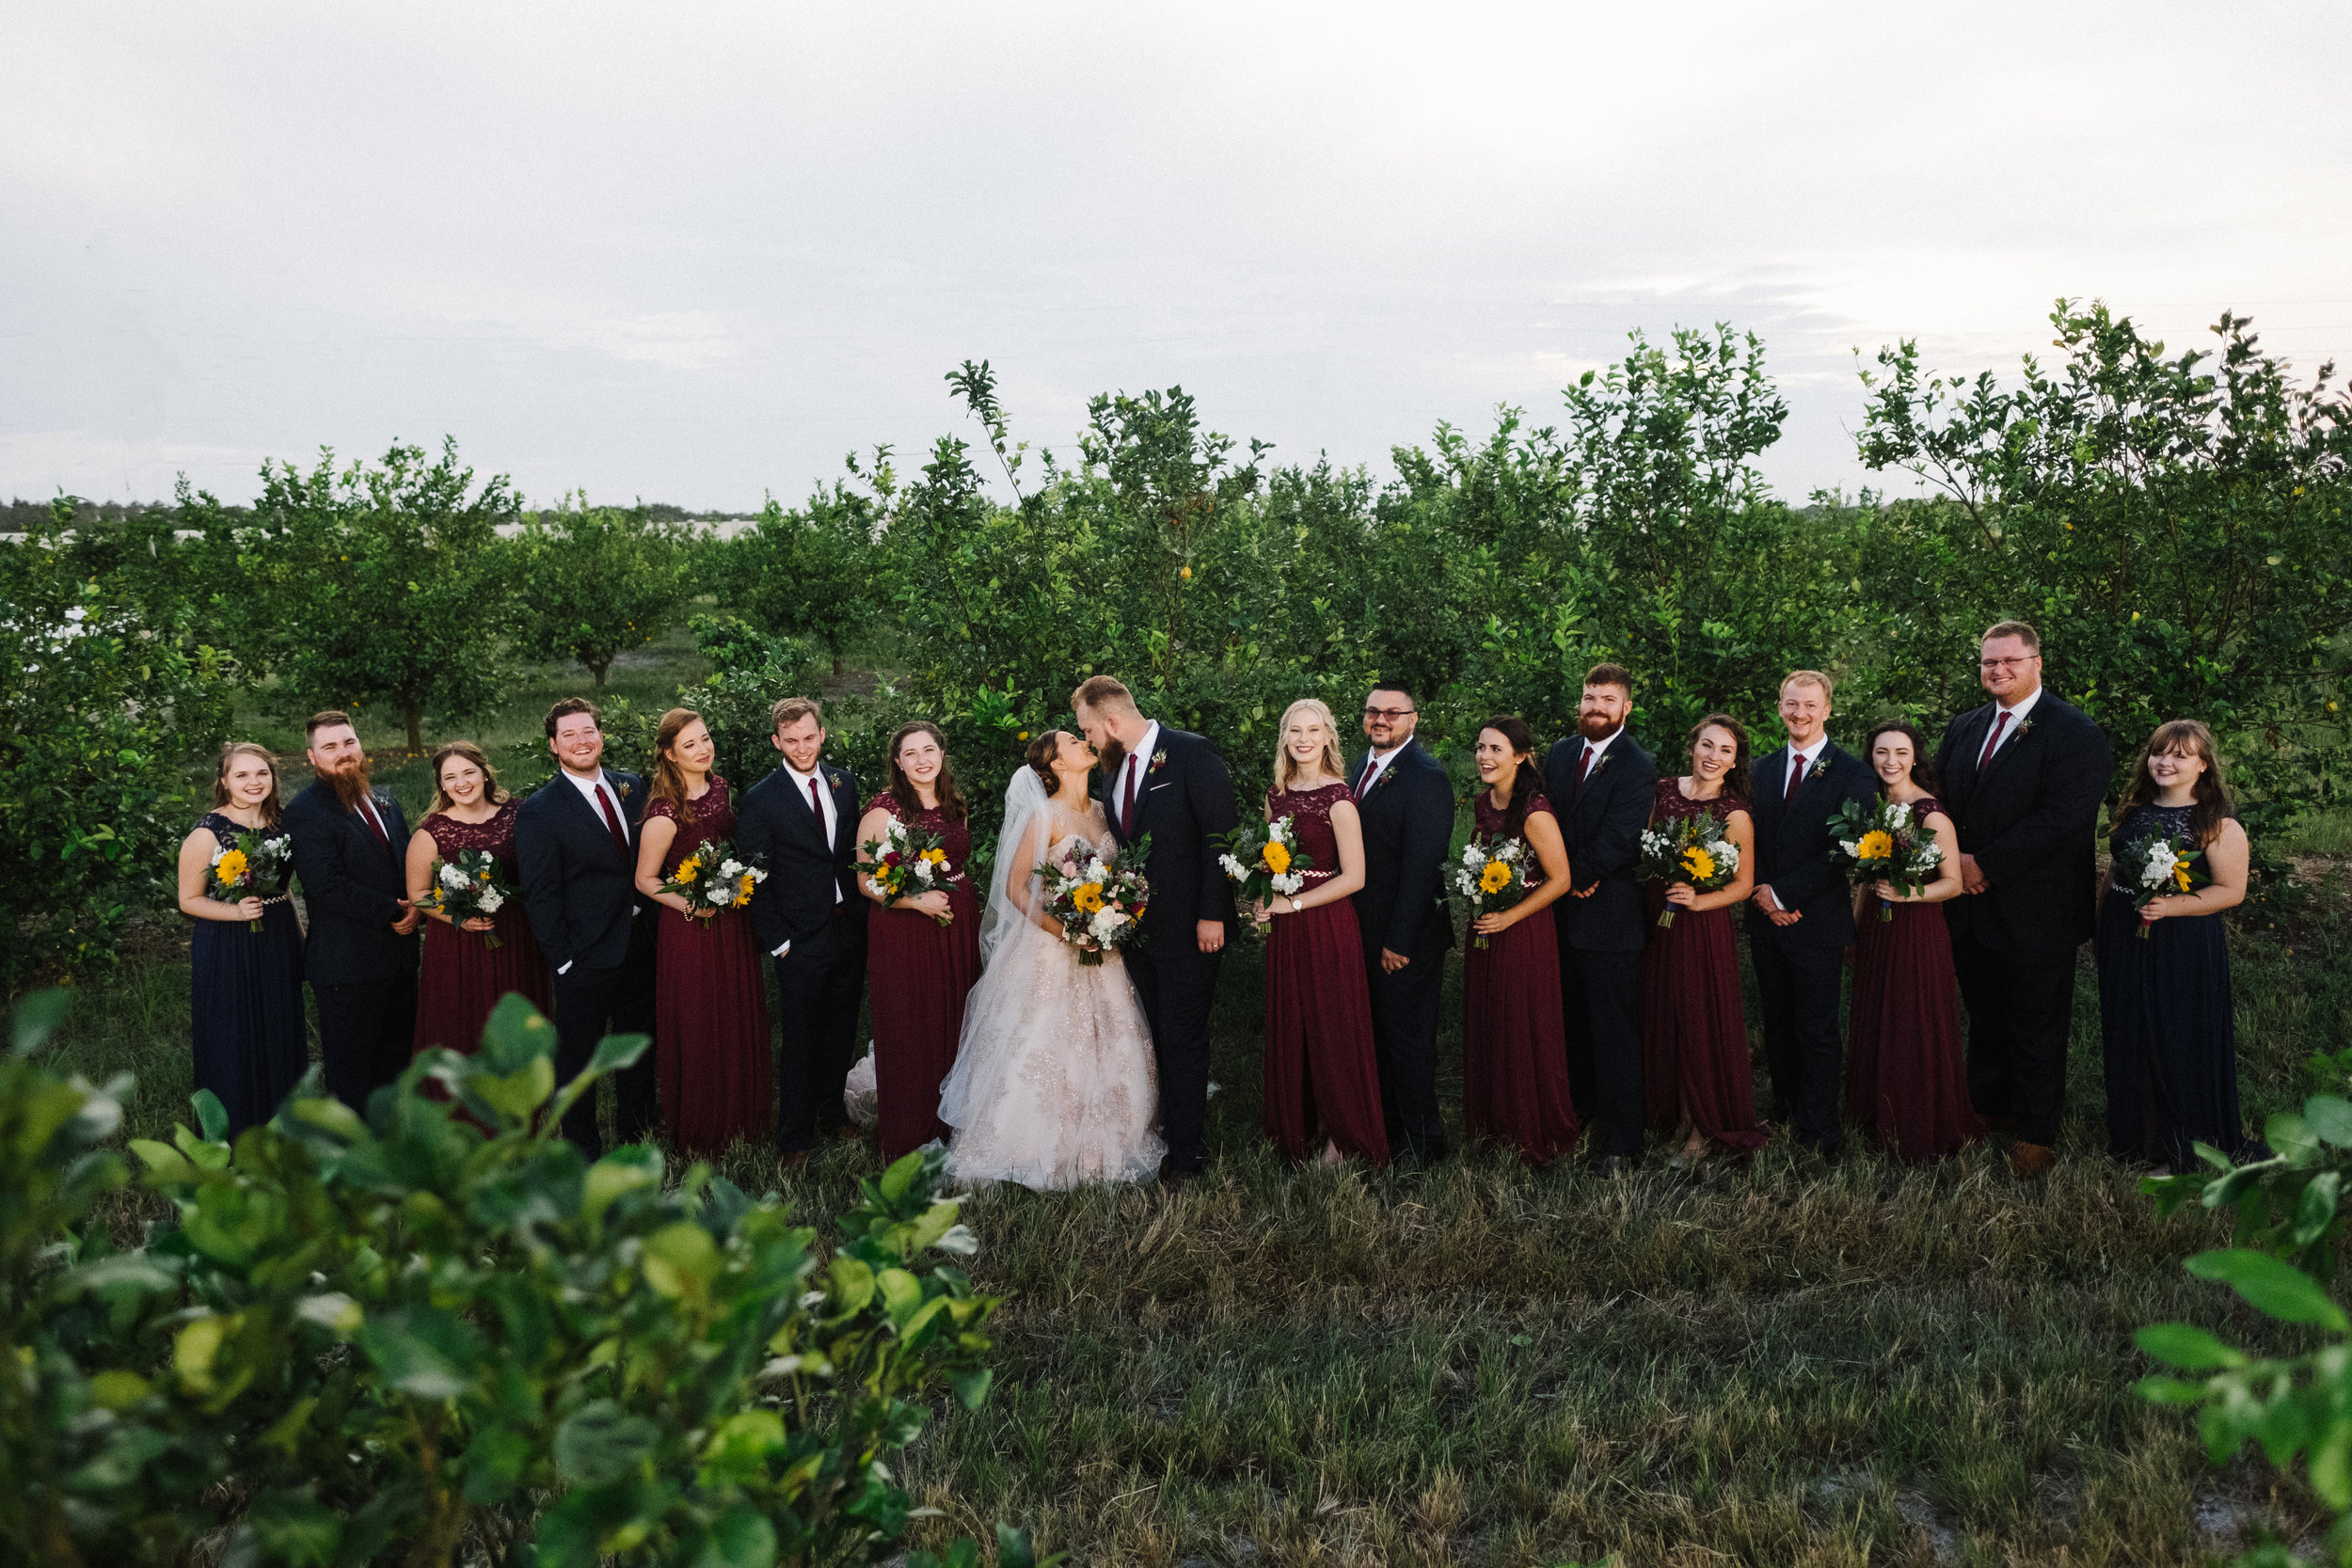 The Pavilion at Mixon Farms Wedding | Benjamin Hewitt Photography | Sarasota, Florida Wedding Photographer